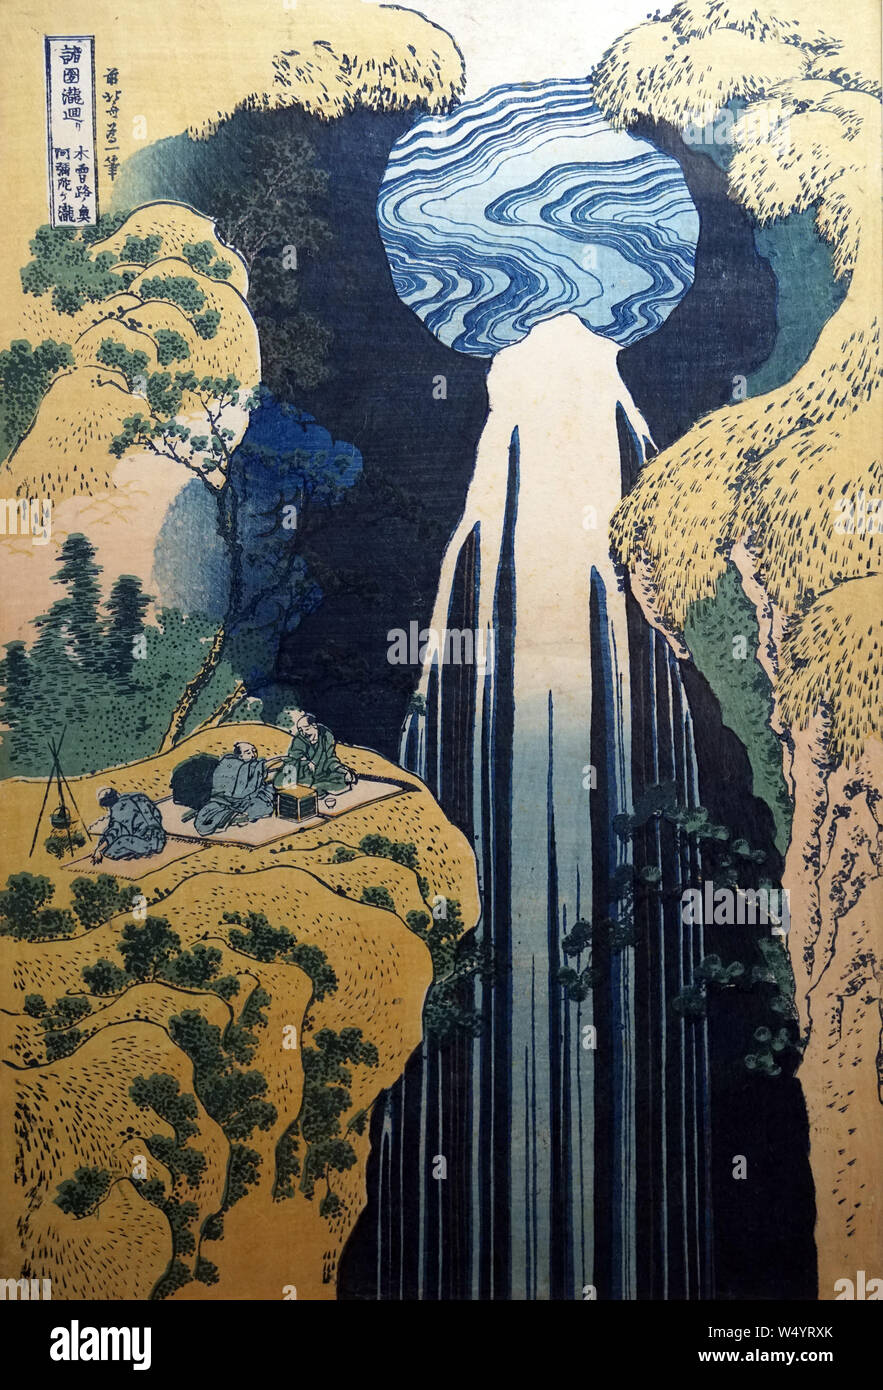 Cascades des différentes provinces : chute d'Amida, profonde au-delà de la route de Kiso Kaido, par Katsushika Hokusai, gravure sur bois, période Edo, 19e siècle Banque D'Images